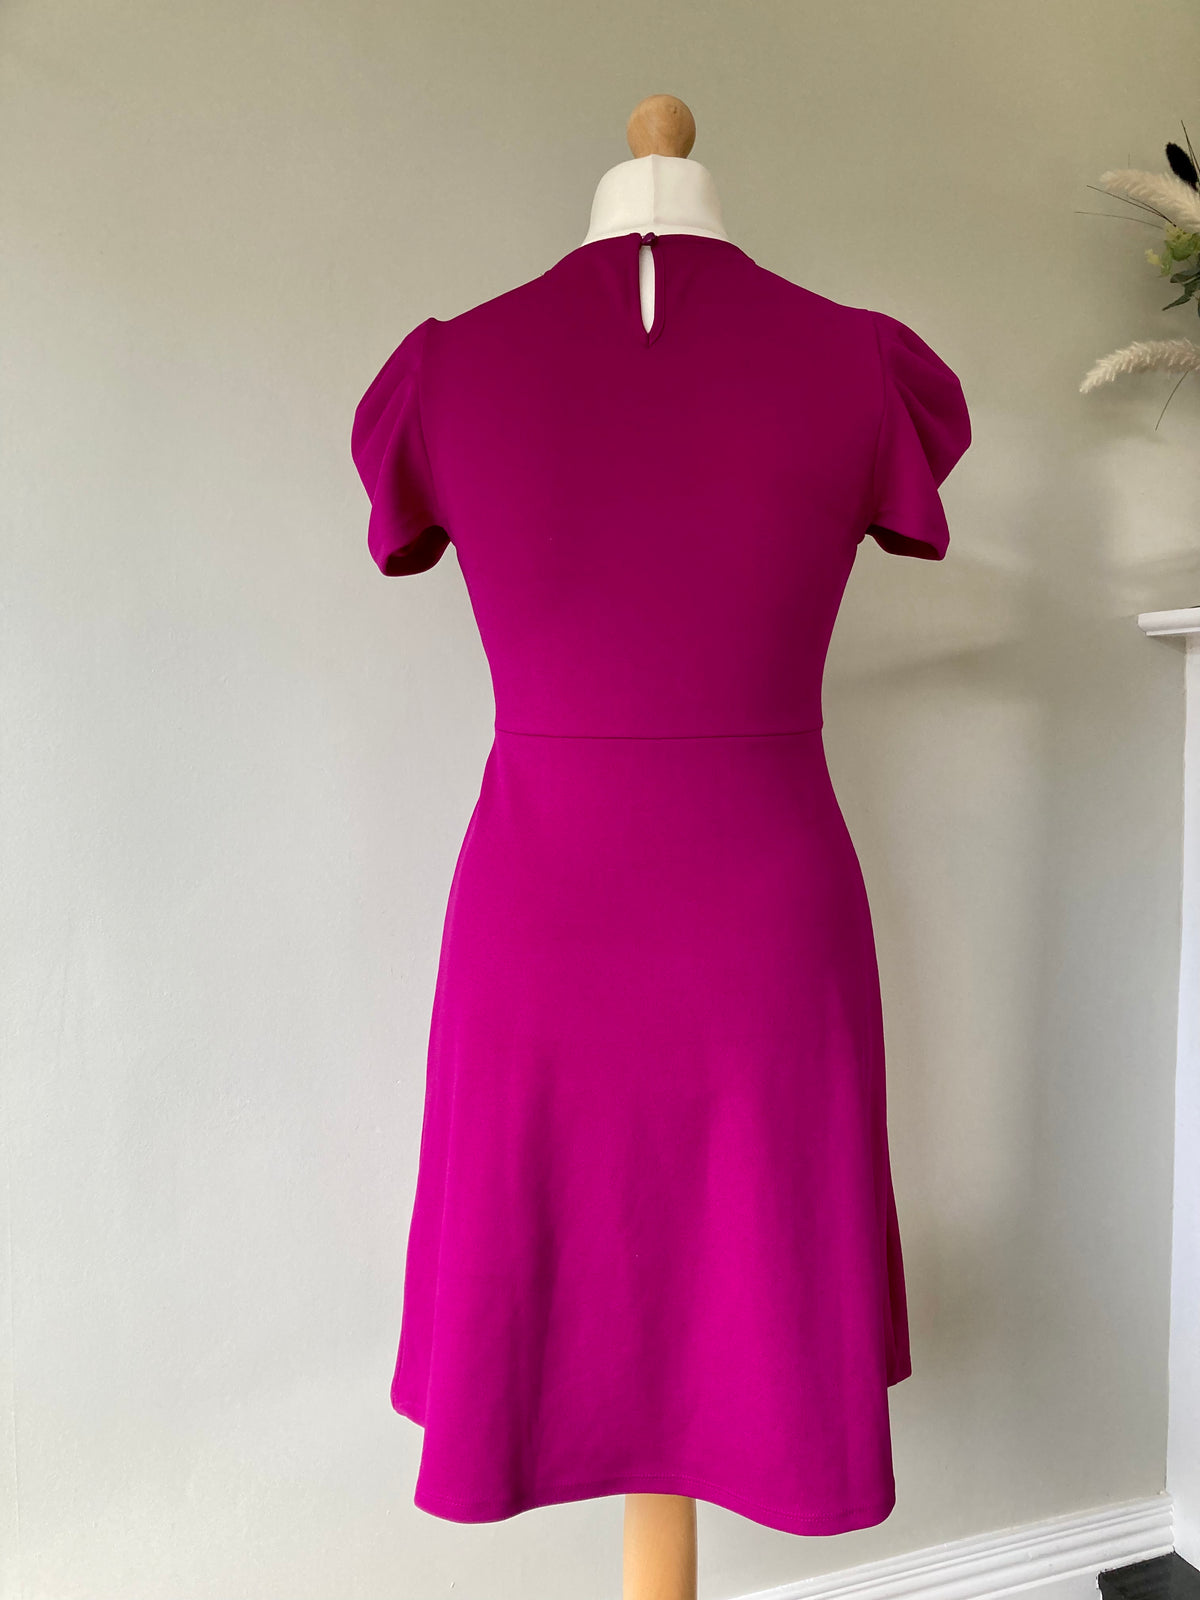 Sequin Trim Dress by BONPRIX- Size 12